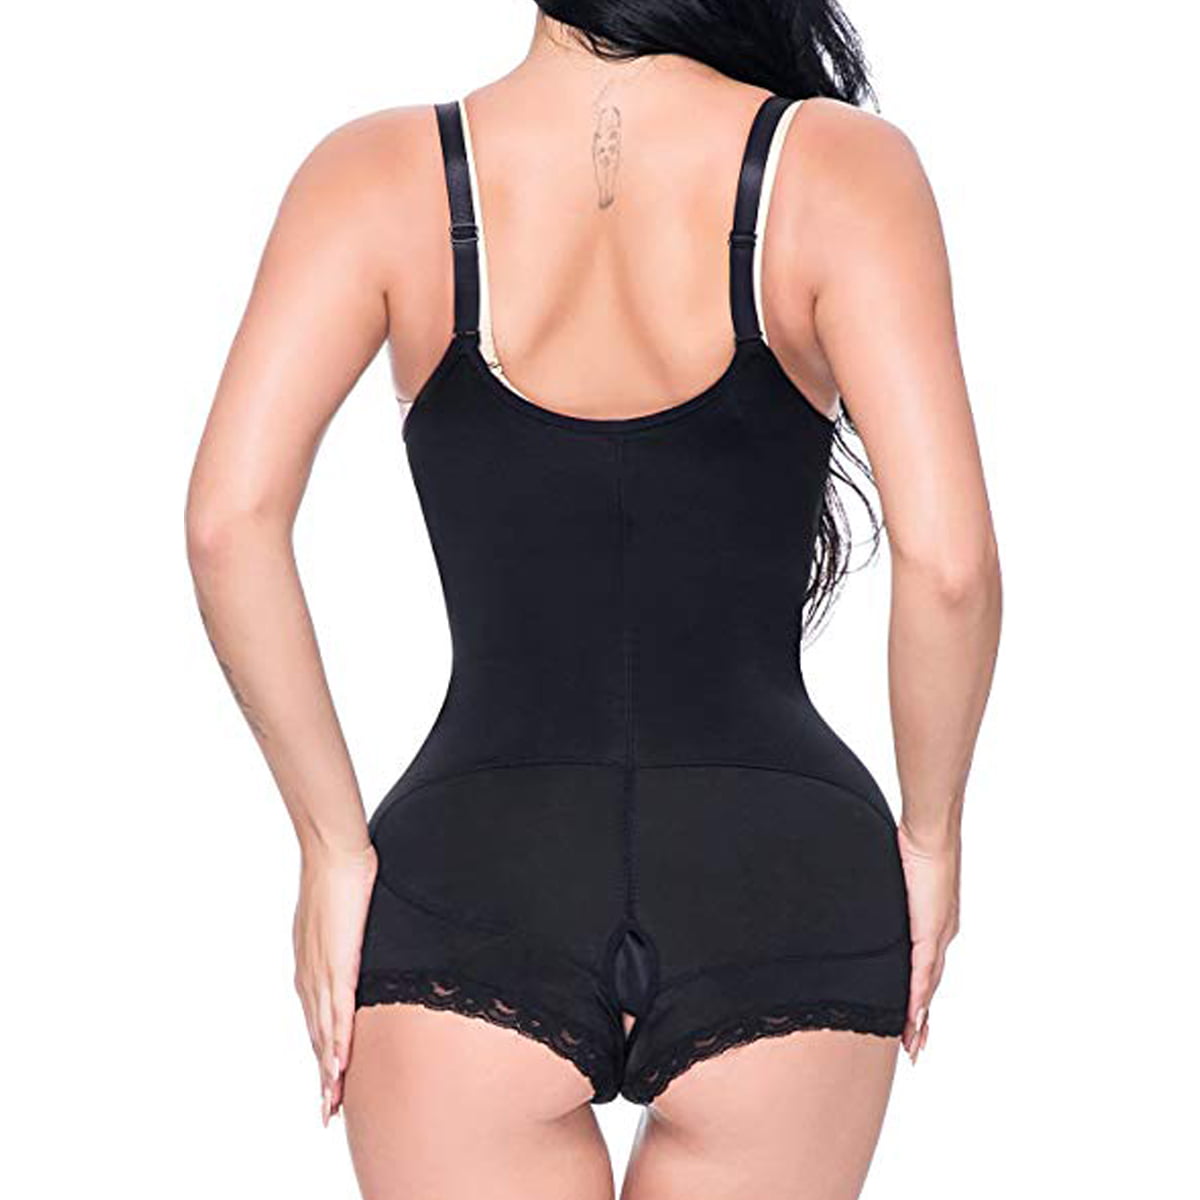 LaLaAreal Women Slimming Body Shaper Open Bust Bodysuit Firm Control Shapewear Underwear Briefer Seamless Zipper